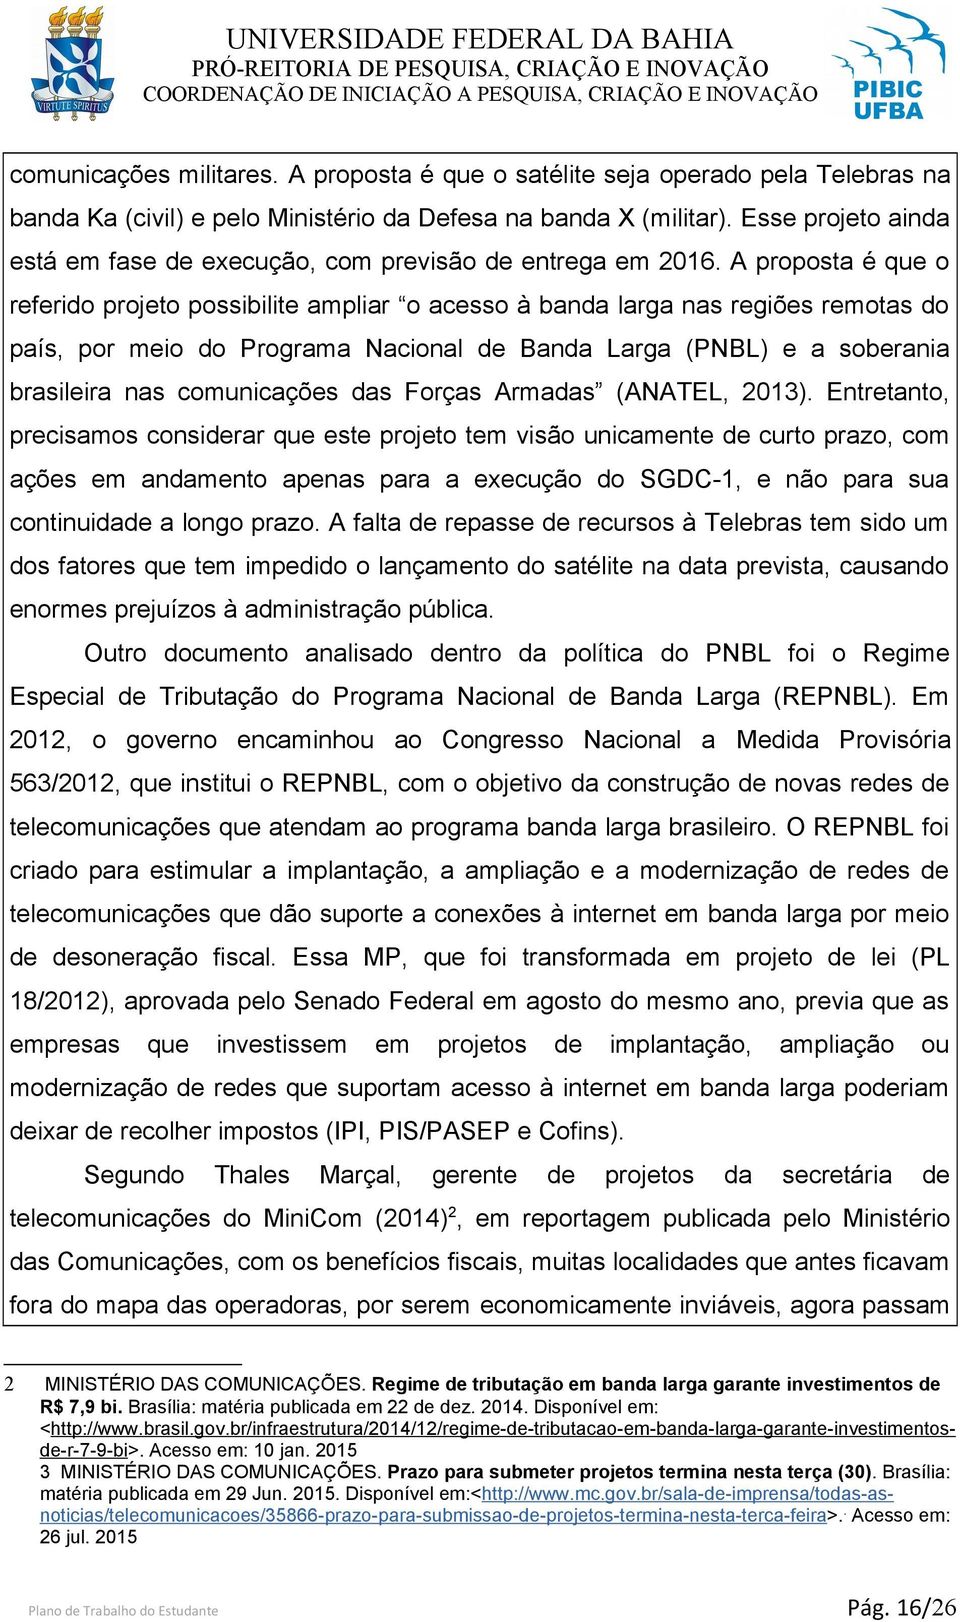 A proposta é que o referido projeto possibilite ampliar o acesso à banda larga nas regiões remotas do país, por meio do Programa Nacional de Banda Larga (PNBL) e a soberania brasileira nas